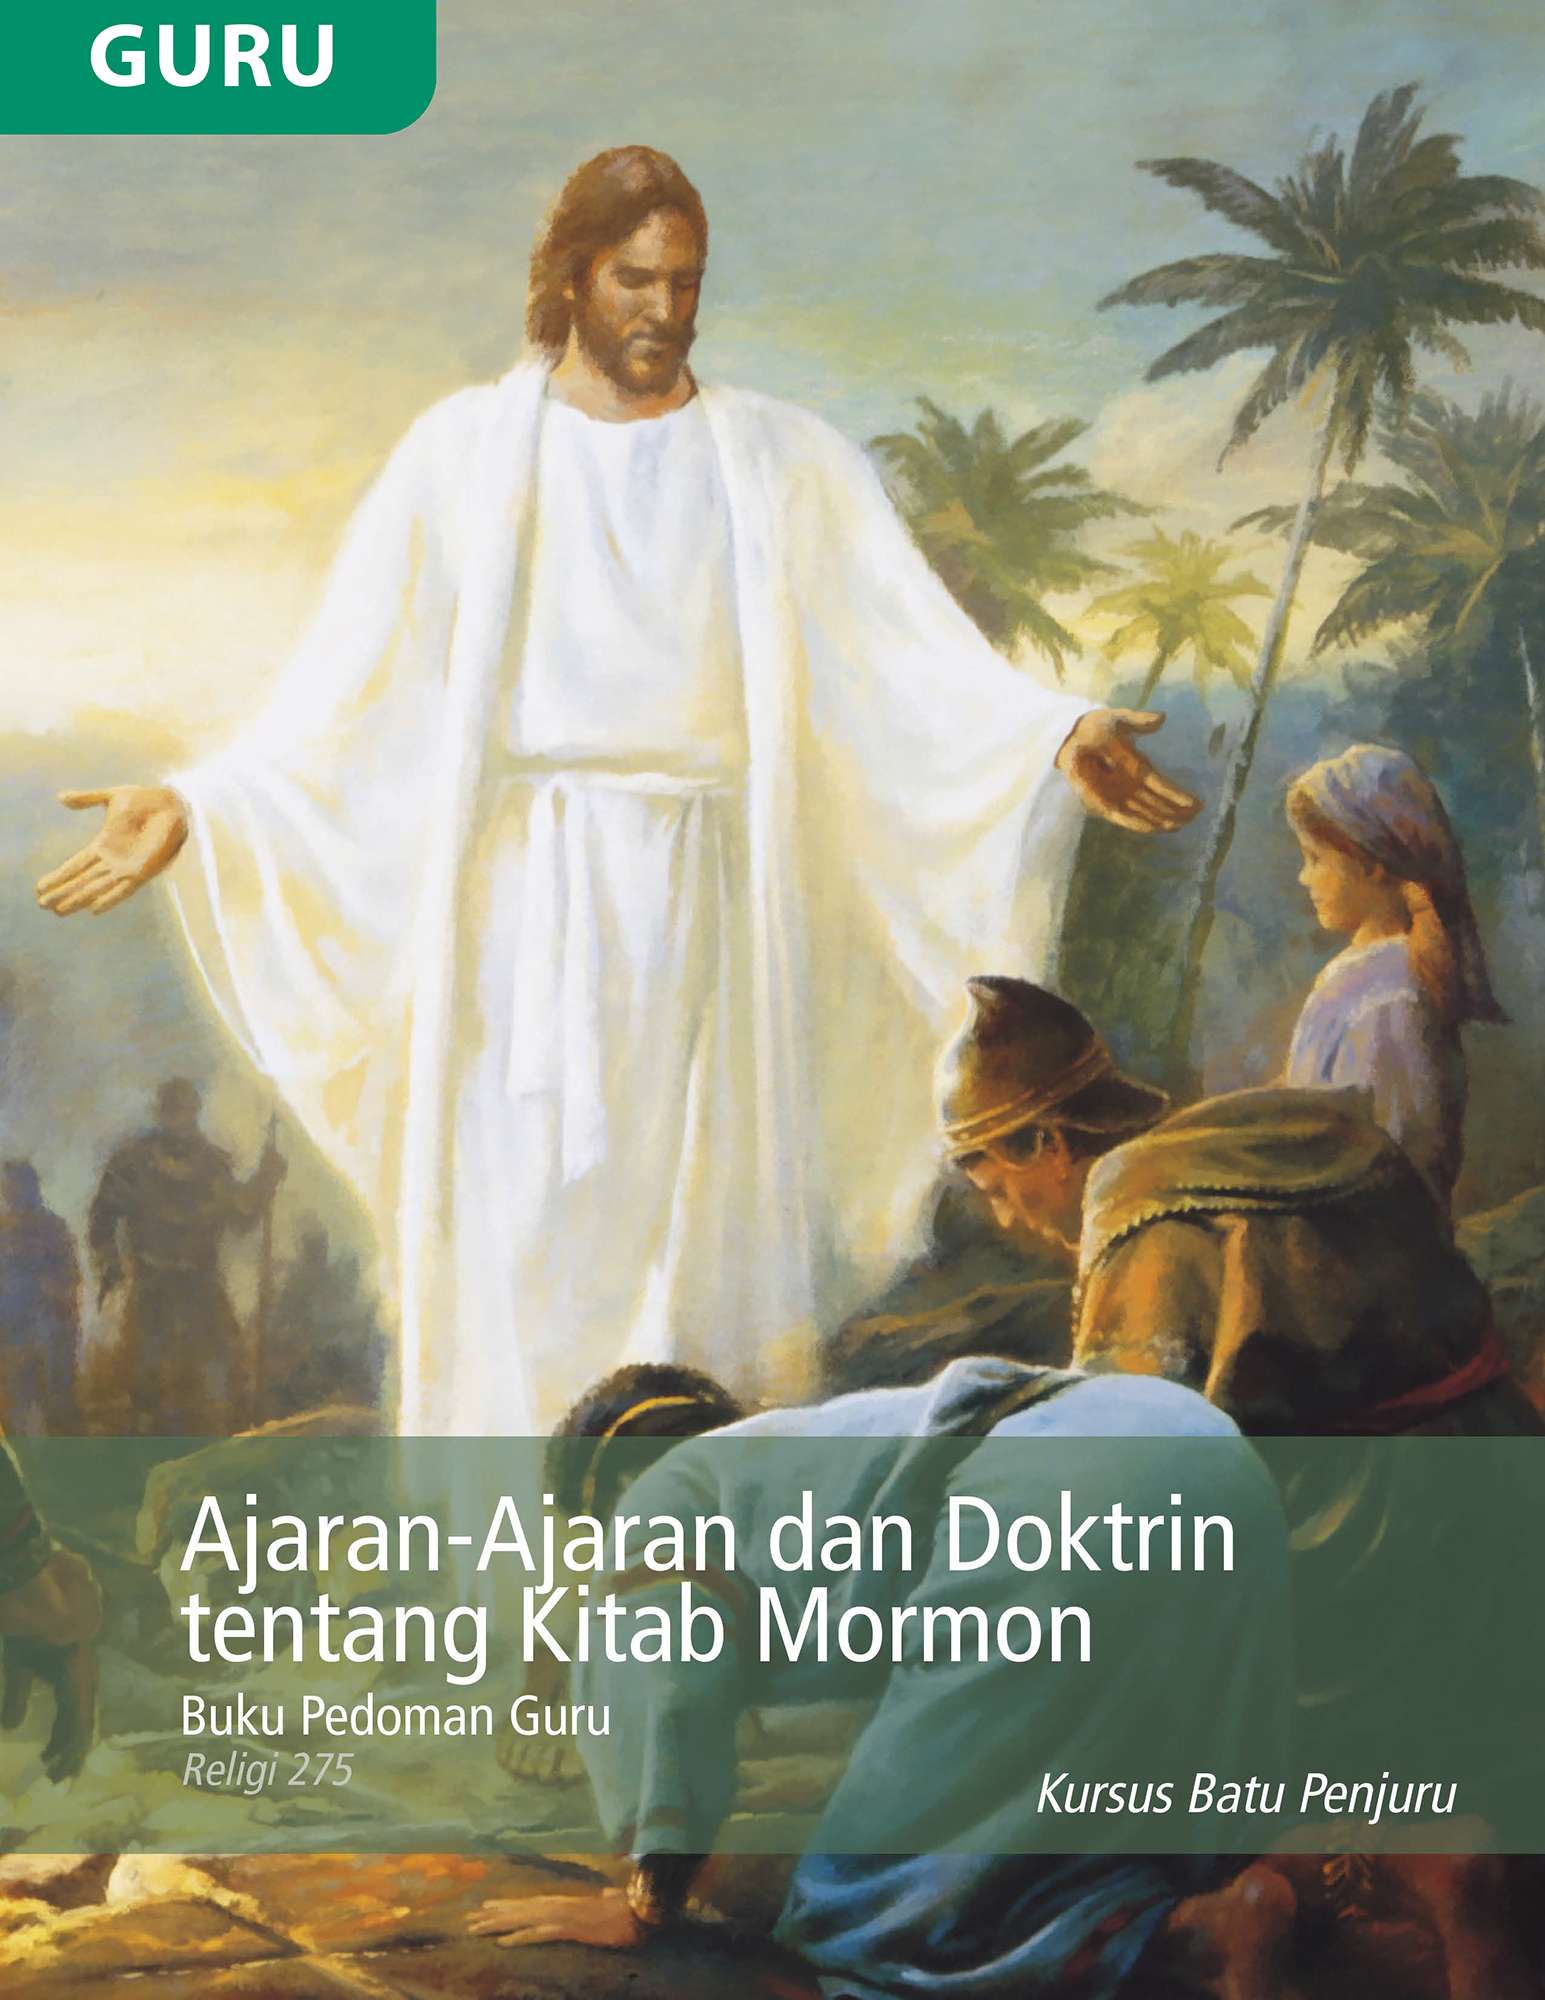 Buku Pedoman Guru Ajaran dan Doktrin Kitab Mormon (Religi 275)